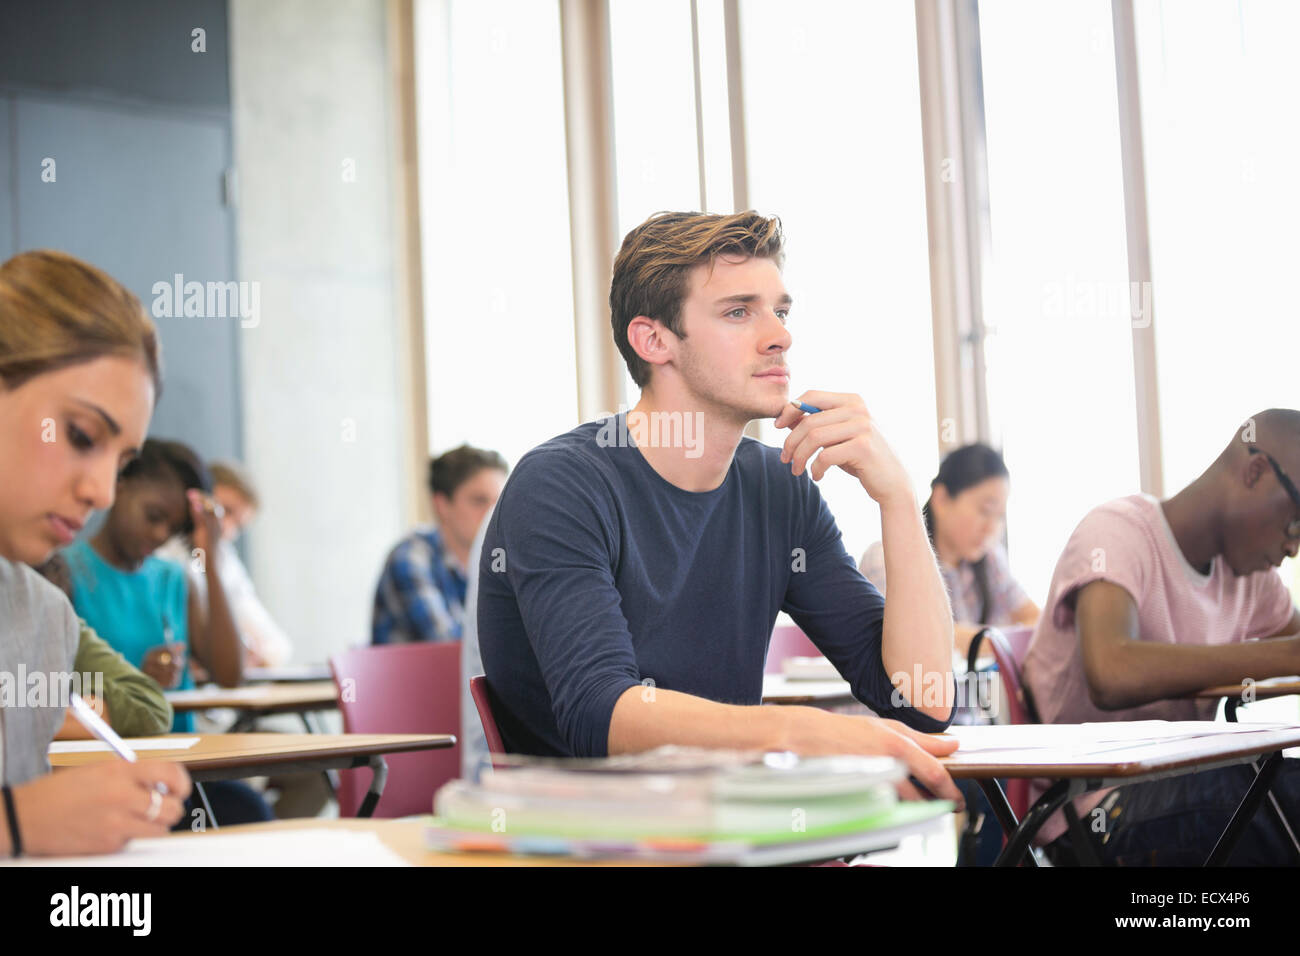 Männliche Schüler mit Hand am Kinn während der Vorlesung mit anderen Studenten im Hintergrund Stockfoto